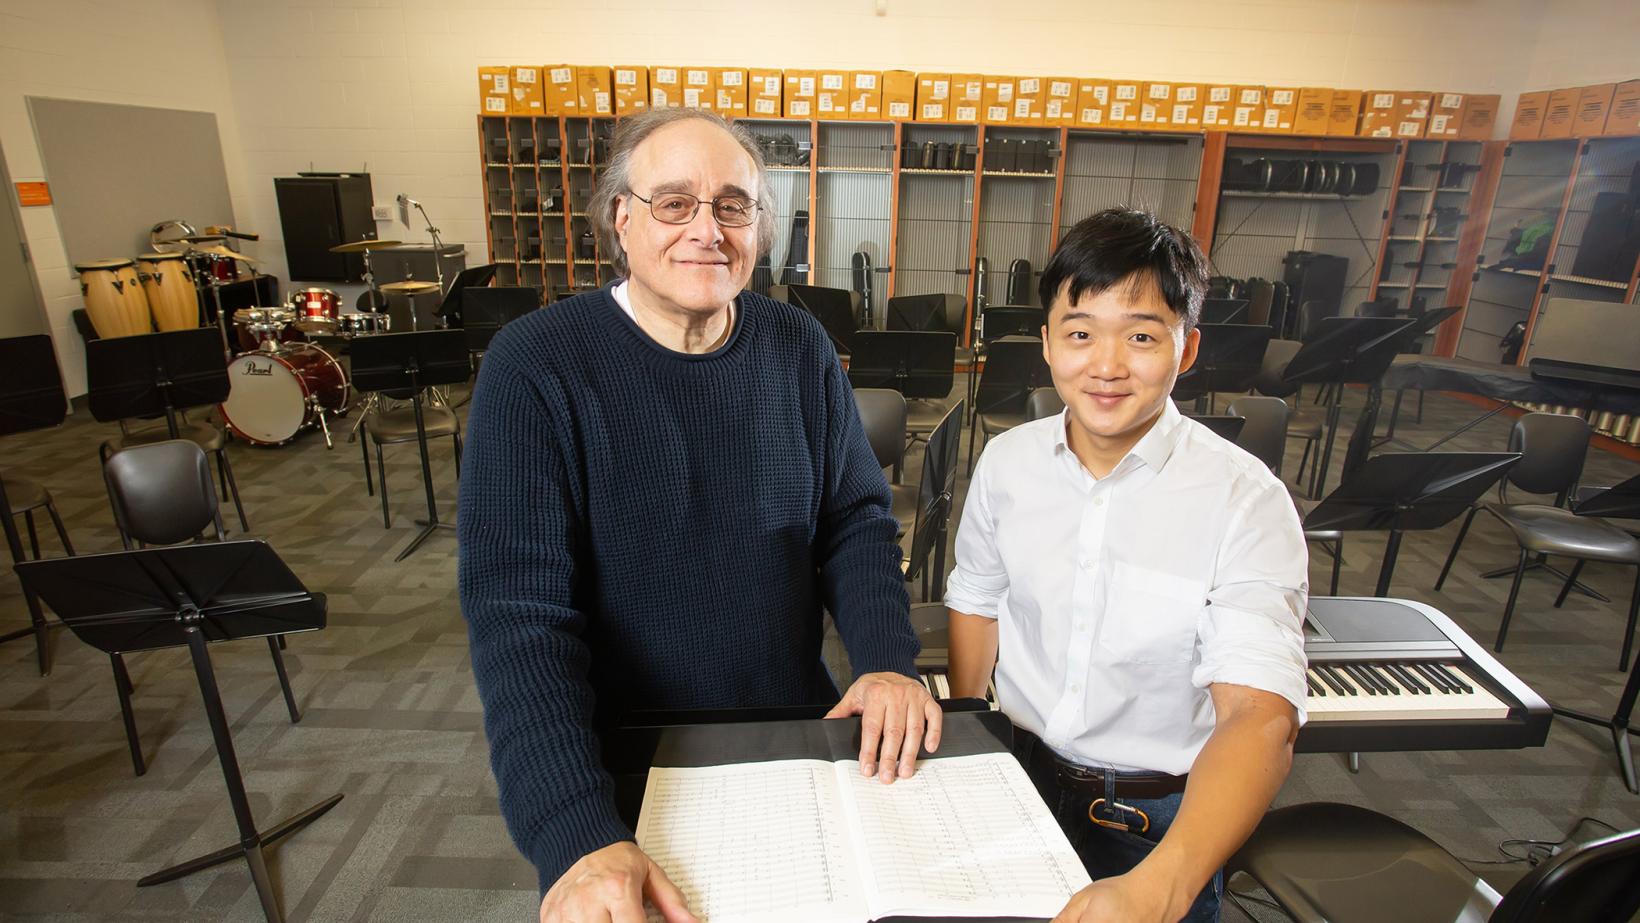 Joseph Pucciatti and Lou Chen '19 in the Trenton Central High School music room